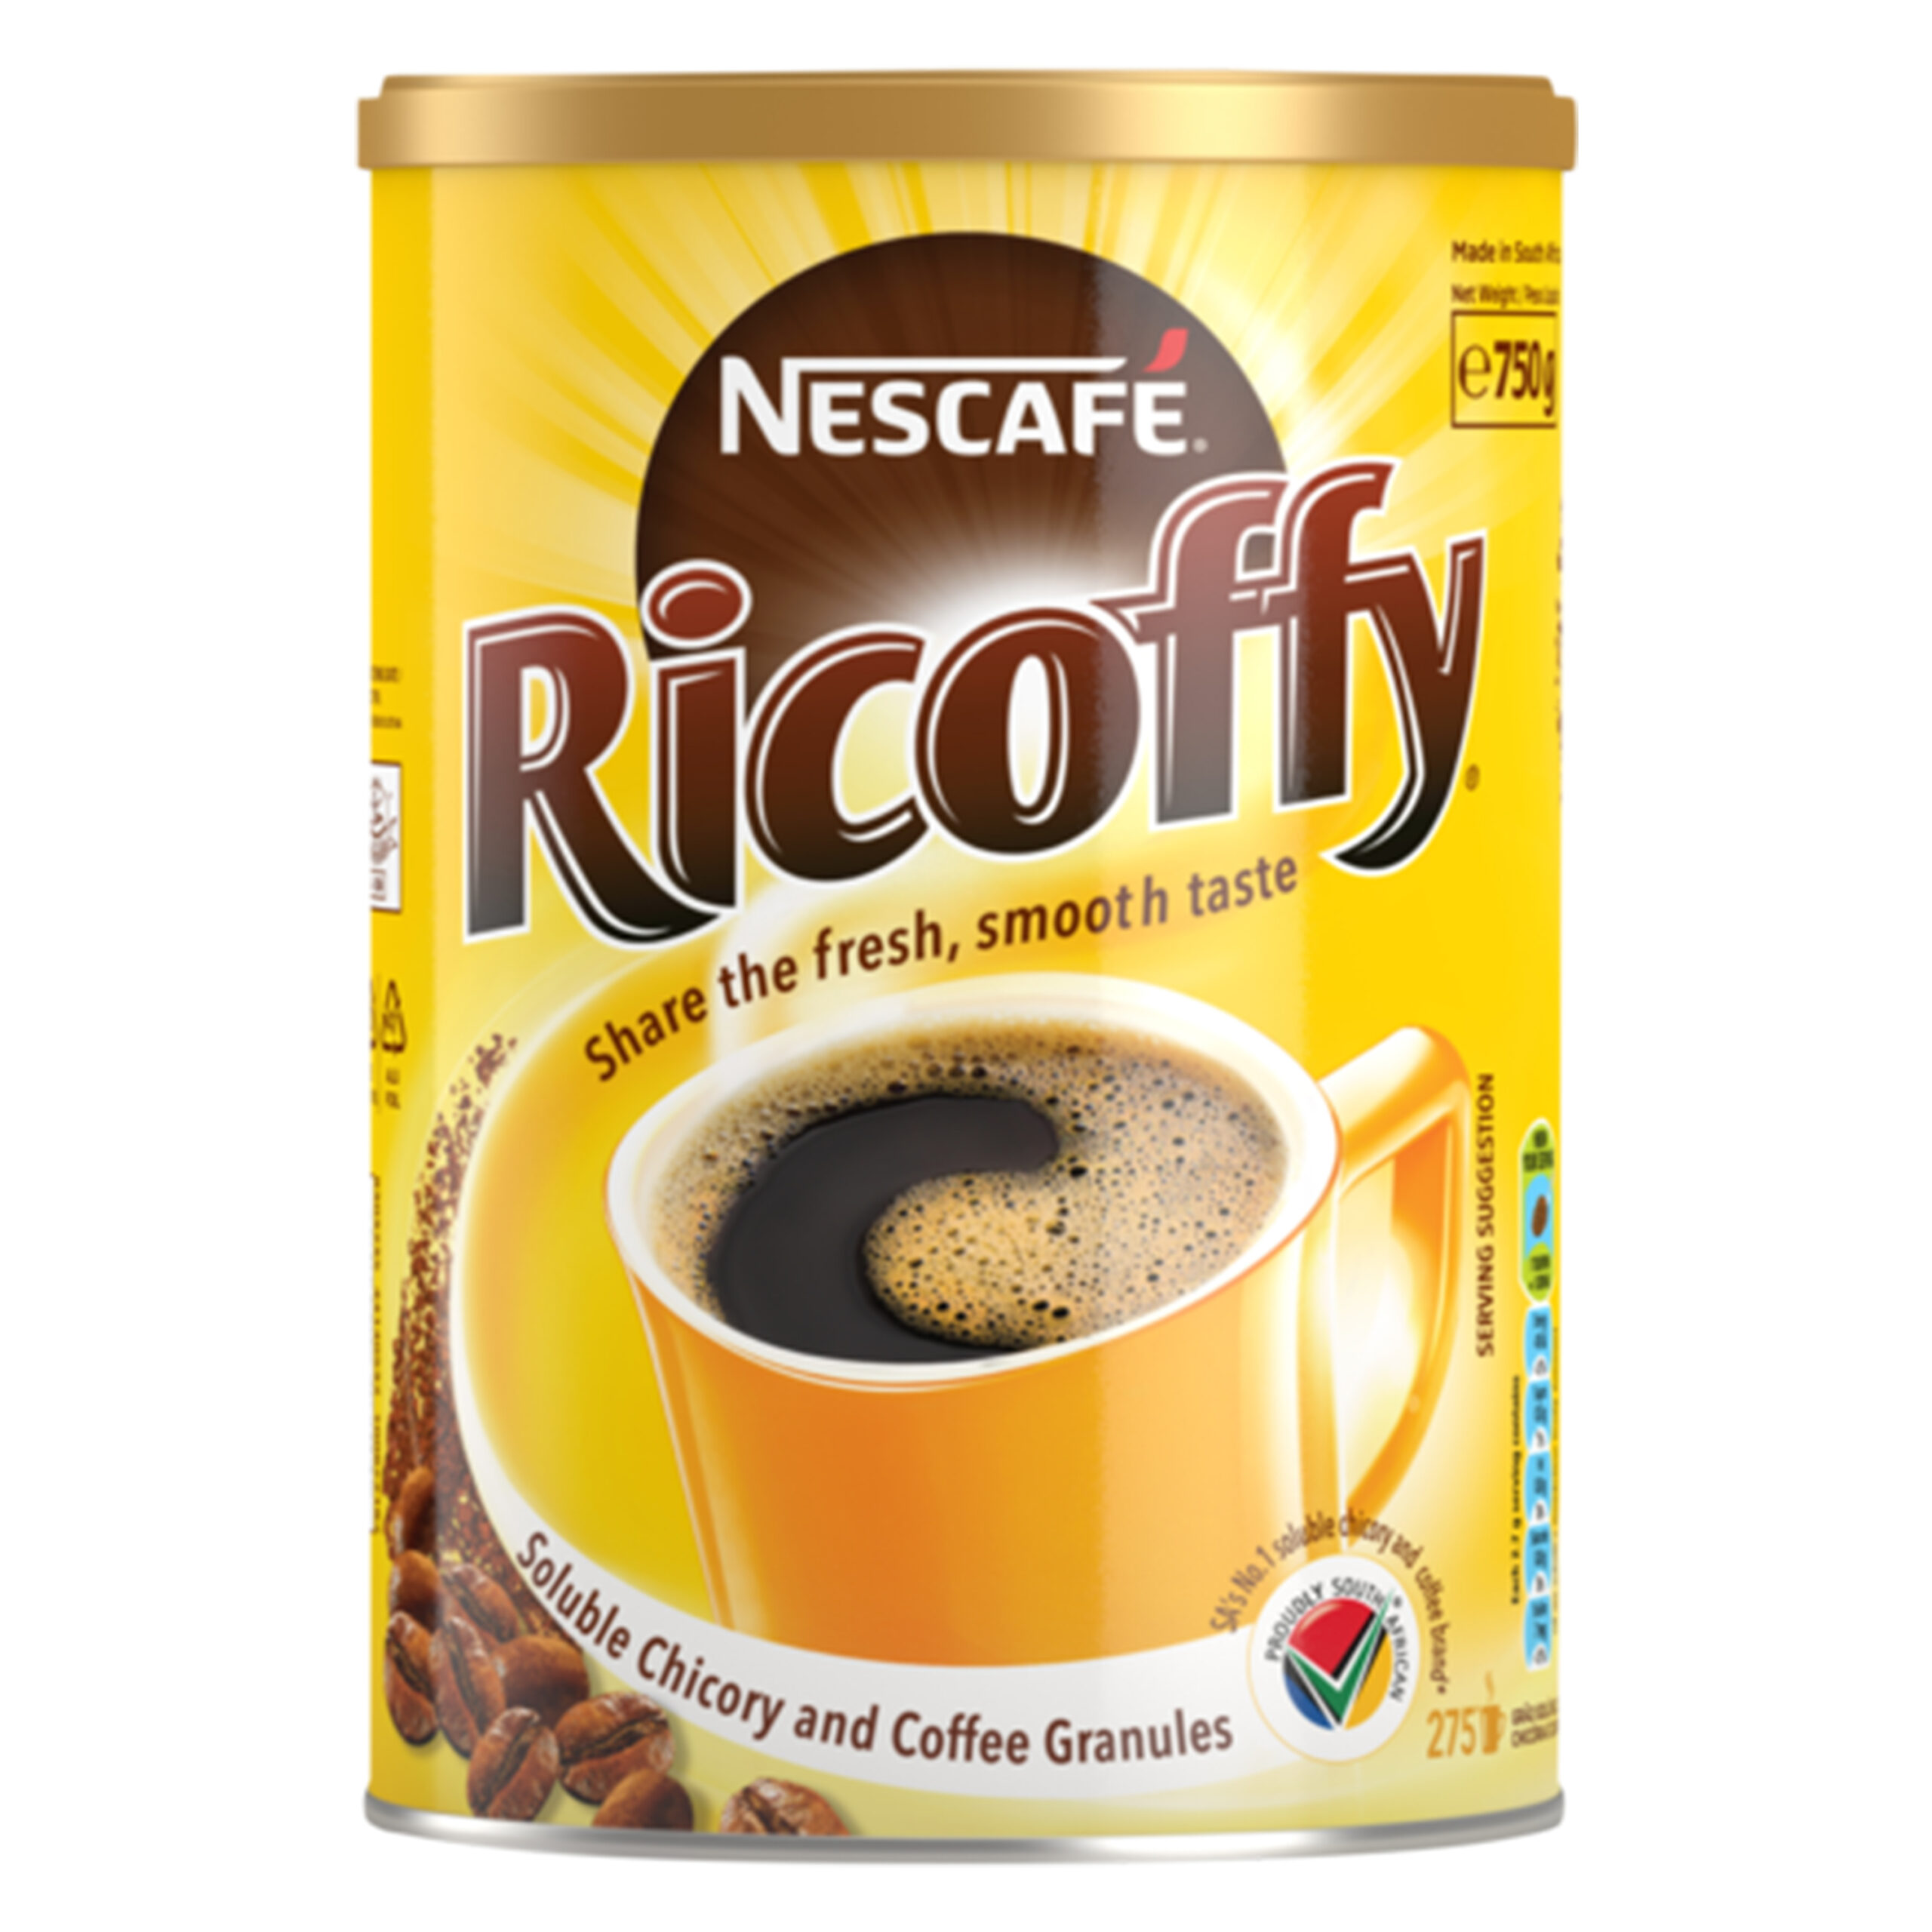 NESCAFE RICOFFY
INSTANT COFFEE
750g